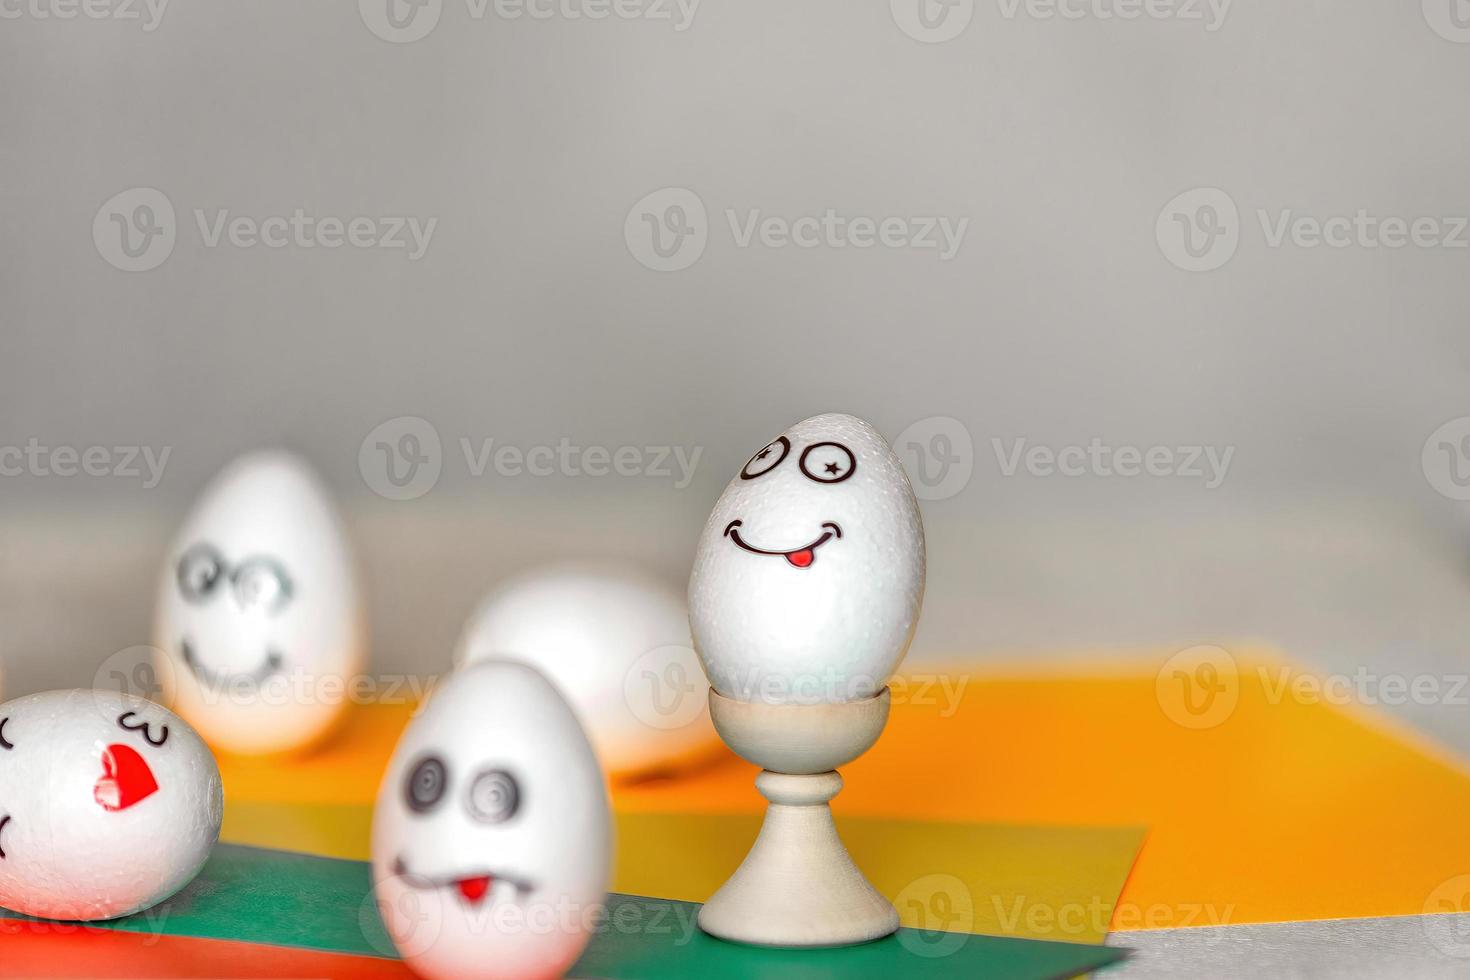 des autocollants avec différentes émotions sont collés sur des œufs blancs, copiez l'espace. le concept de communication et d'émotions dans les réseaux sociaux, décoration inhabituelle d'œufs de pâques photo